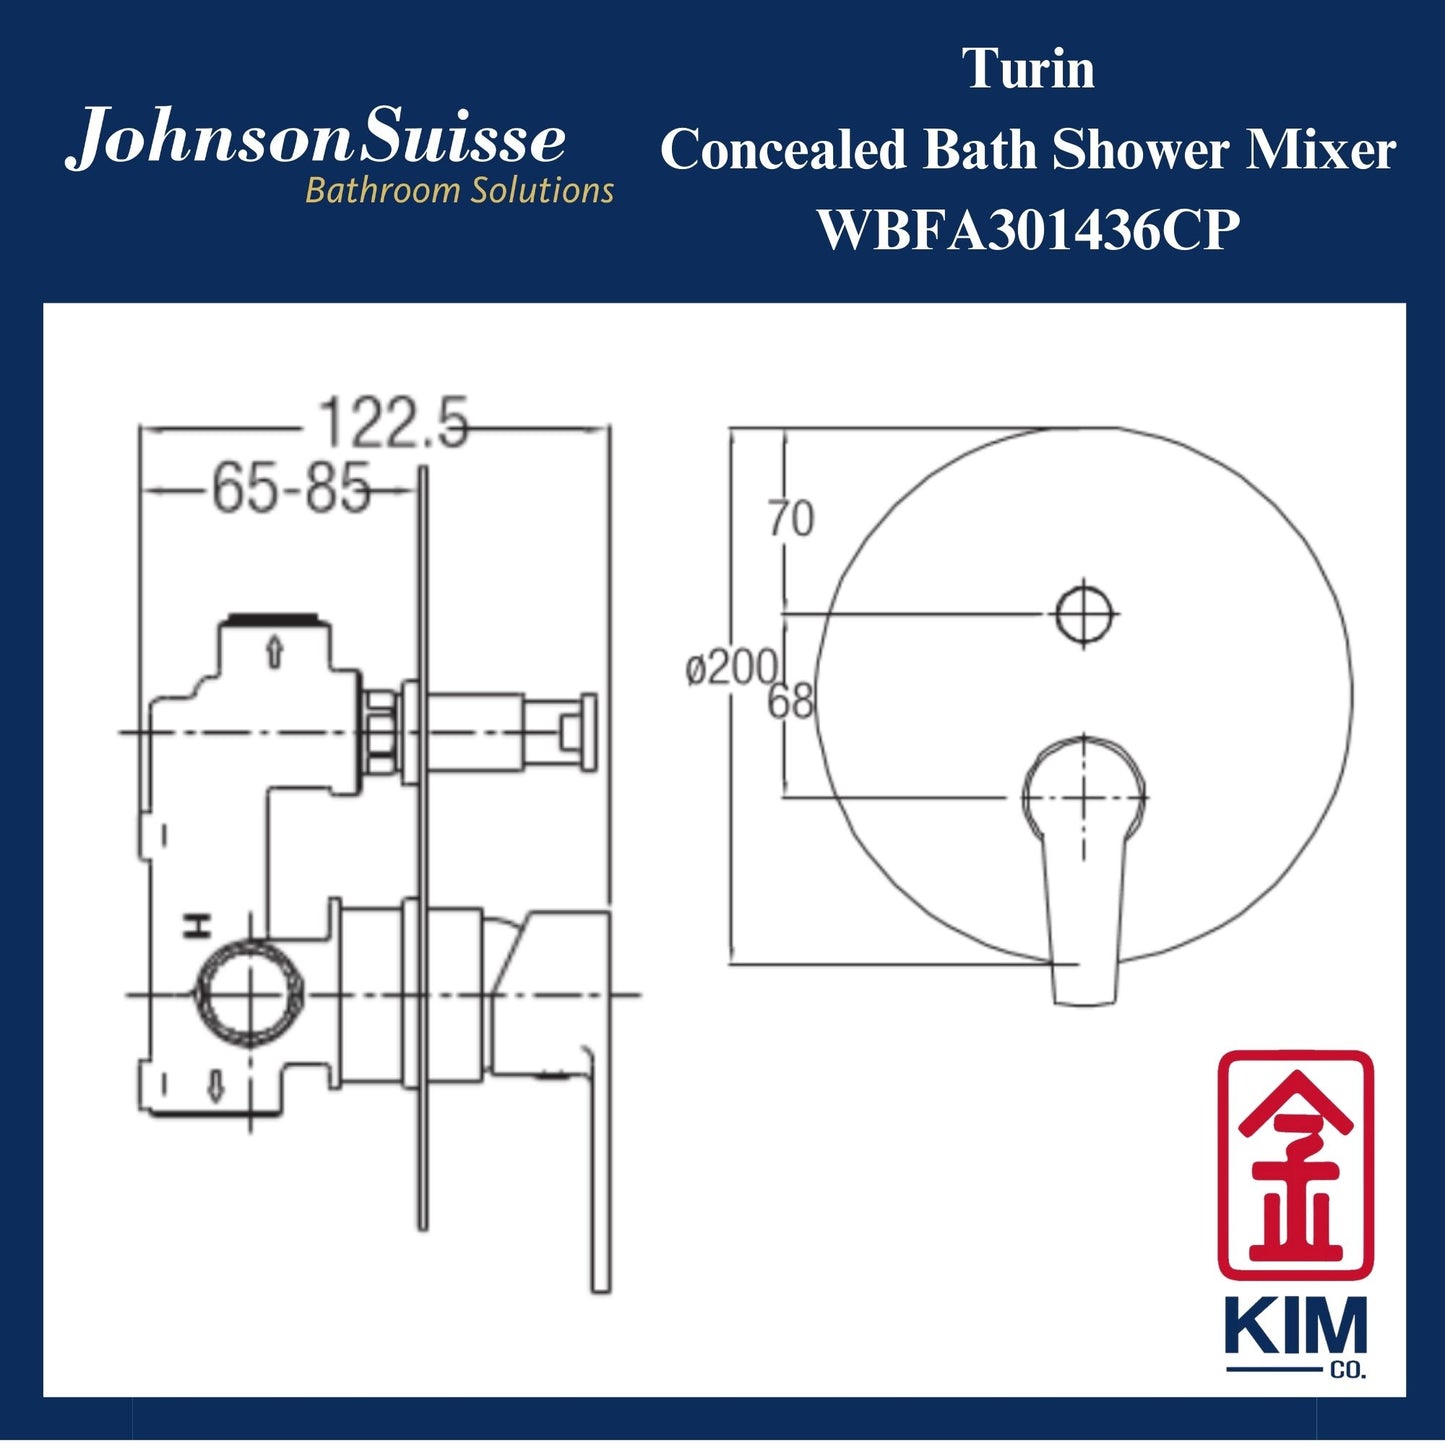 Johnson Suisse Turin Concealed Bath Shower Mixer (WBFA301436CP)